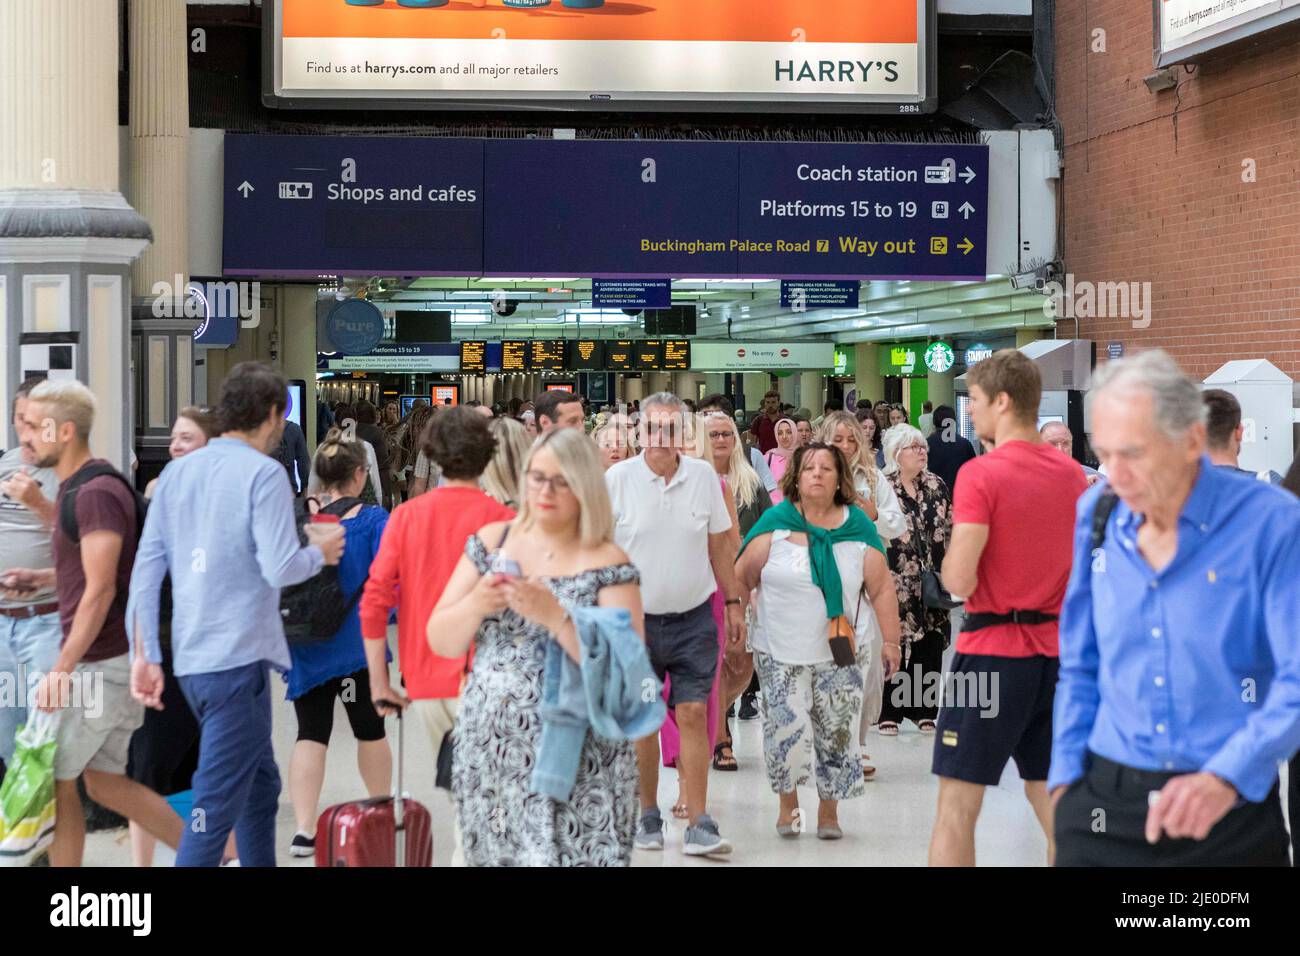 I vacanzieri hanno visto inondare la stazione ferroviaria di Londra Victoria il fine settimana prima di uno sciopero ferroviario RMT a livello nazionale. Macchine per biglietti e uscite viste essere bu Foto Stock